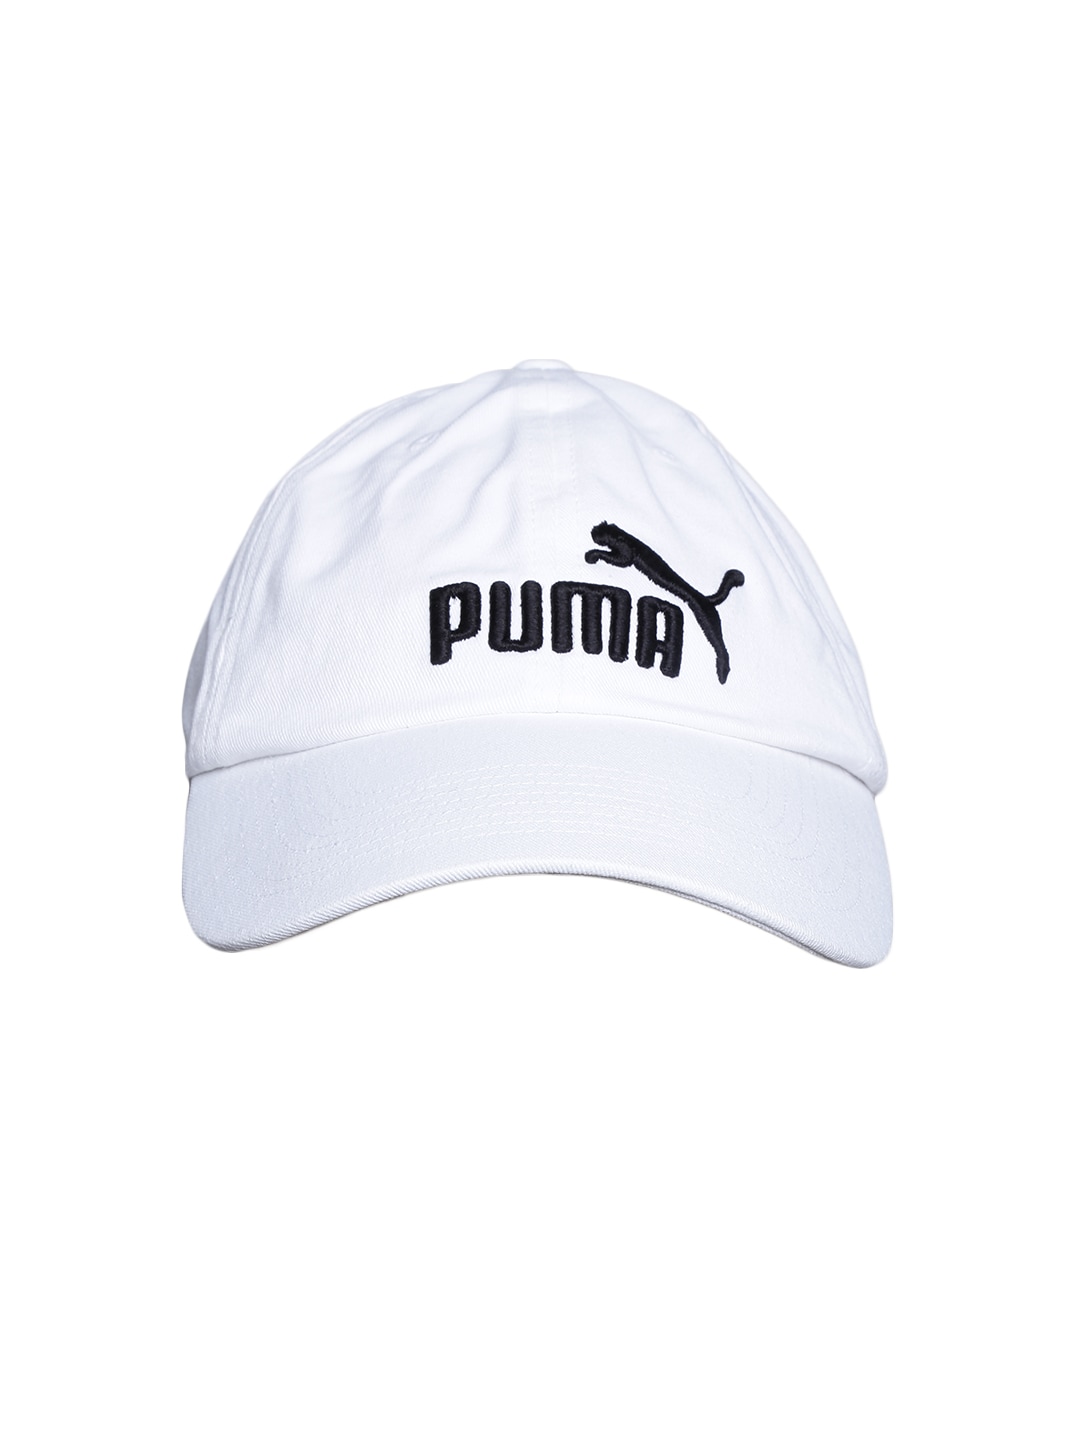 PUMA Unisex White ESS Cap Price in India